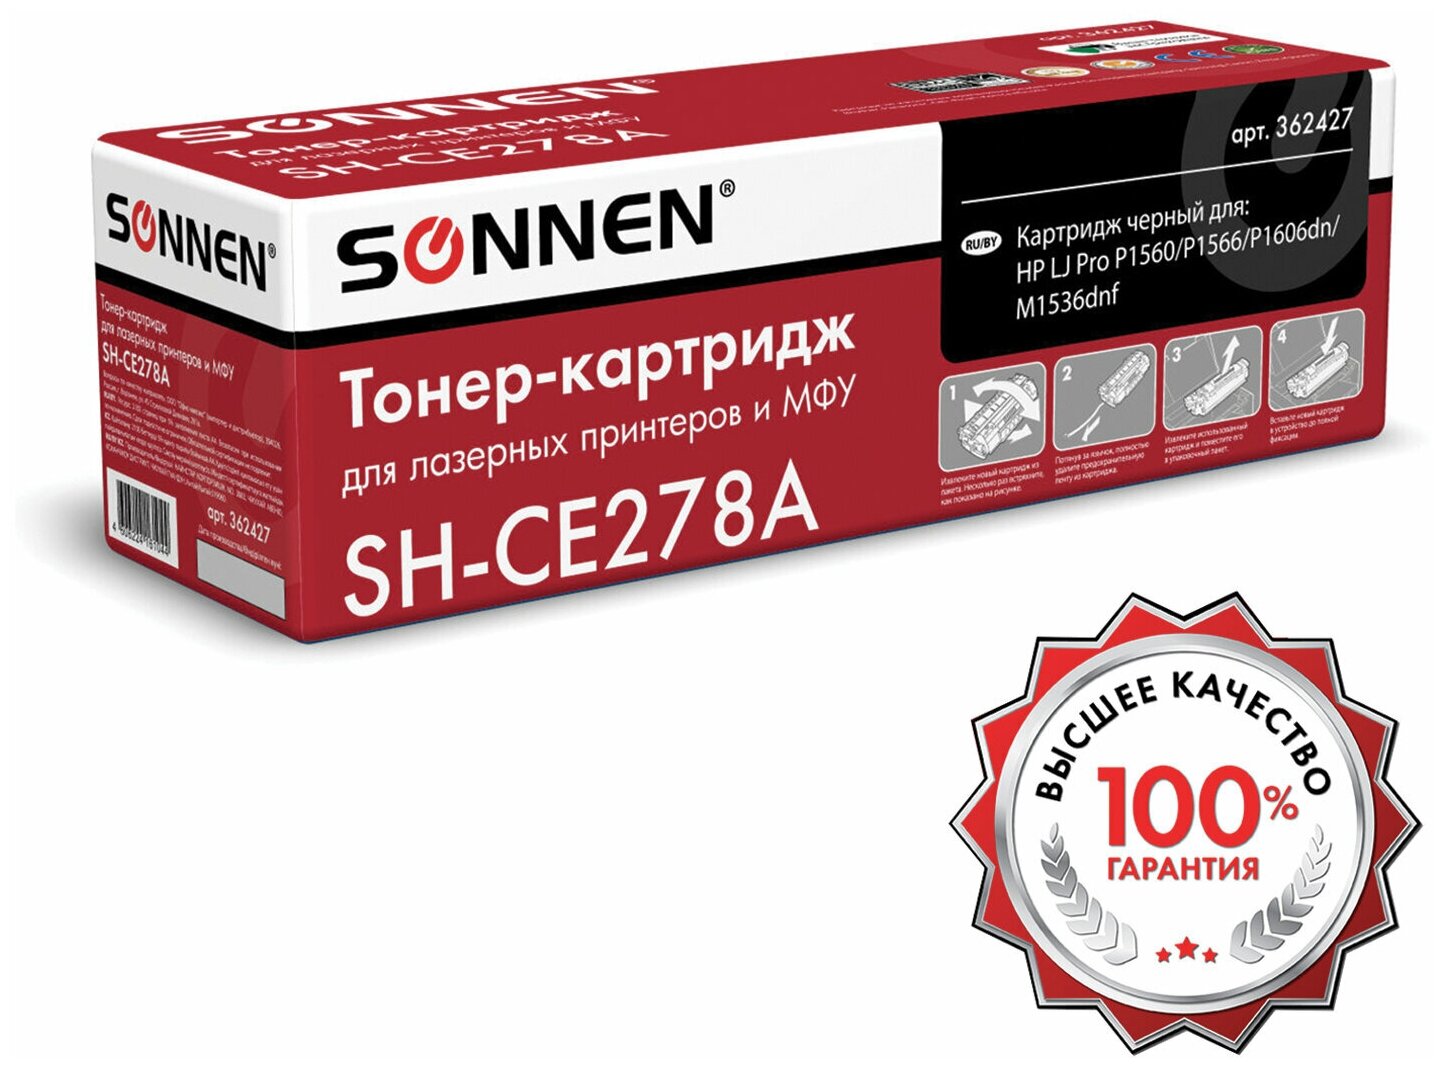 Картридж для лазерных принтеров Sonnen SH-CE278A, для HP LaserJet P1566, P1606DN, 2100 стр (362427)